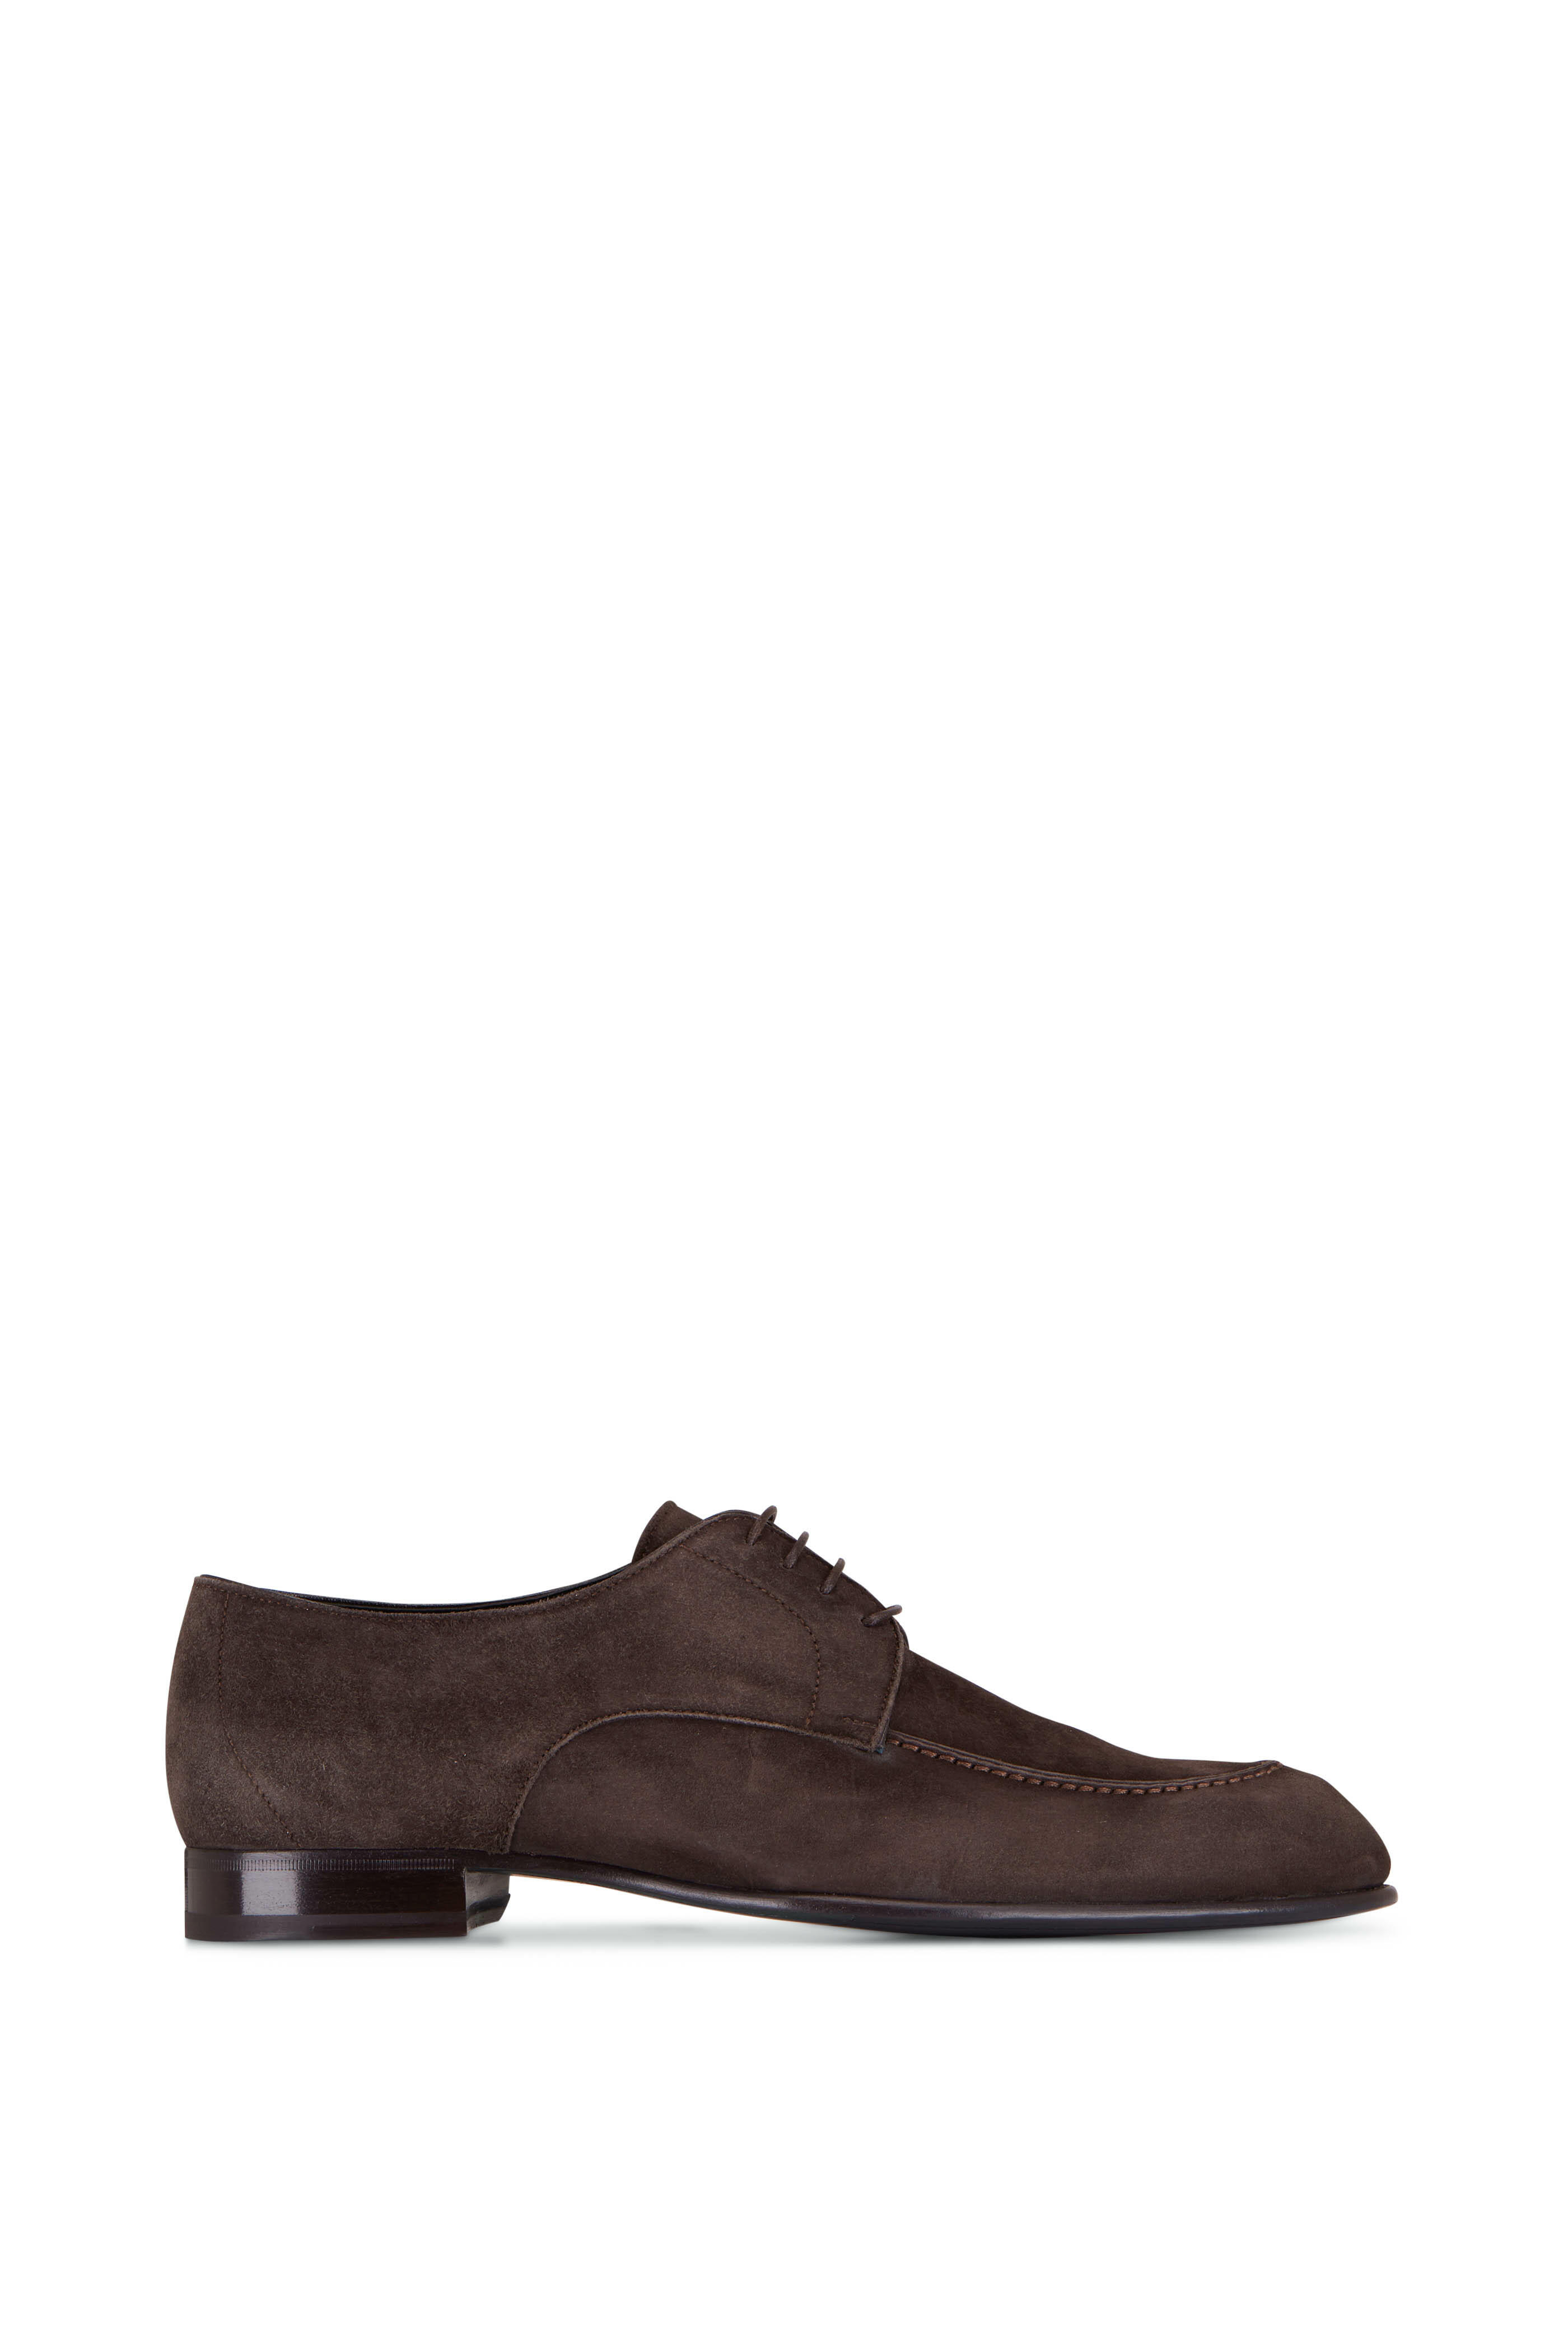 Brioni - Brown Suede Derby Shoe | Mitchell Stores